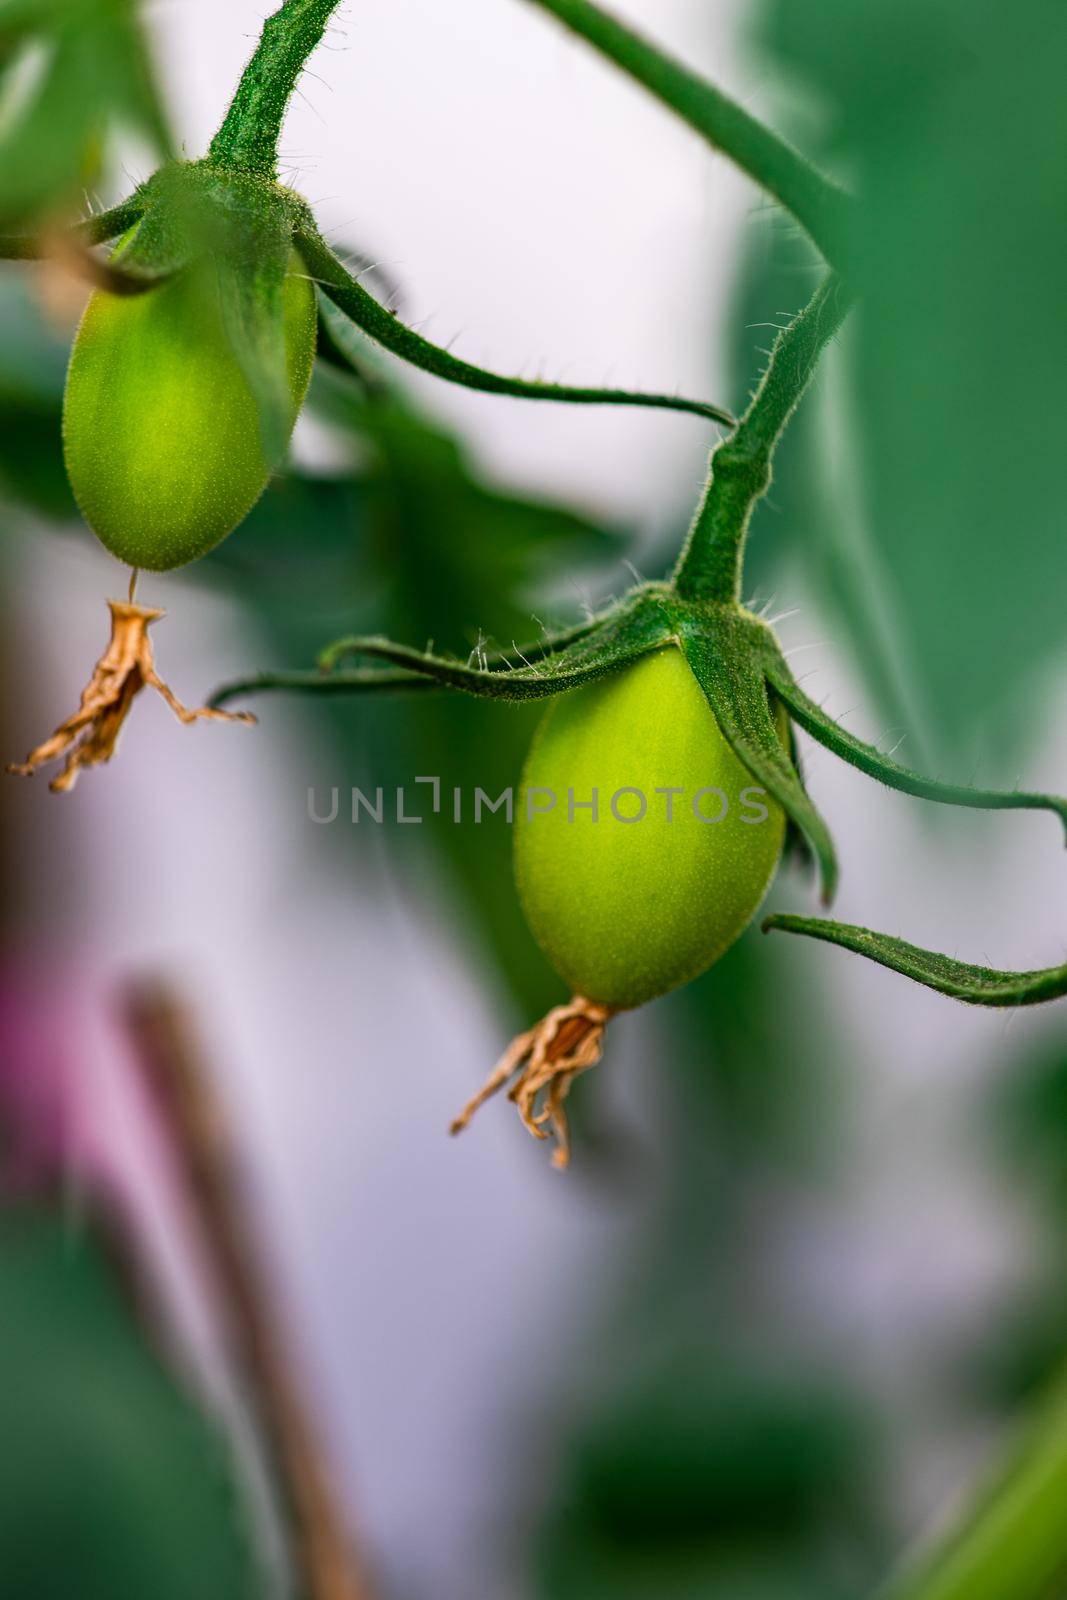 Tomato vegetable growing in outdoor garden